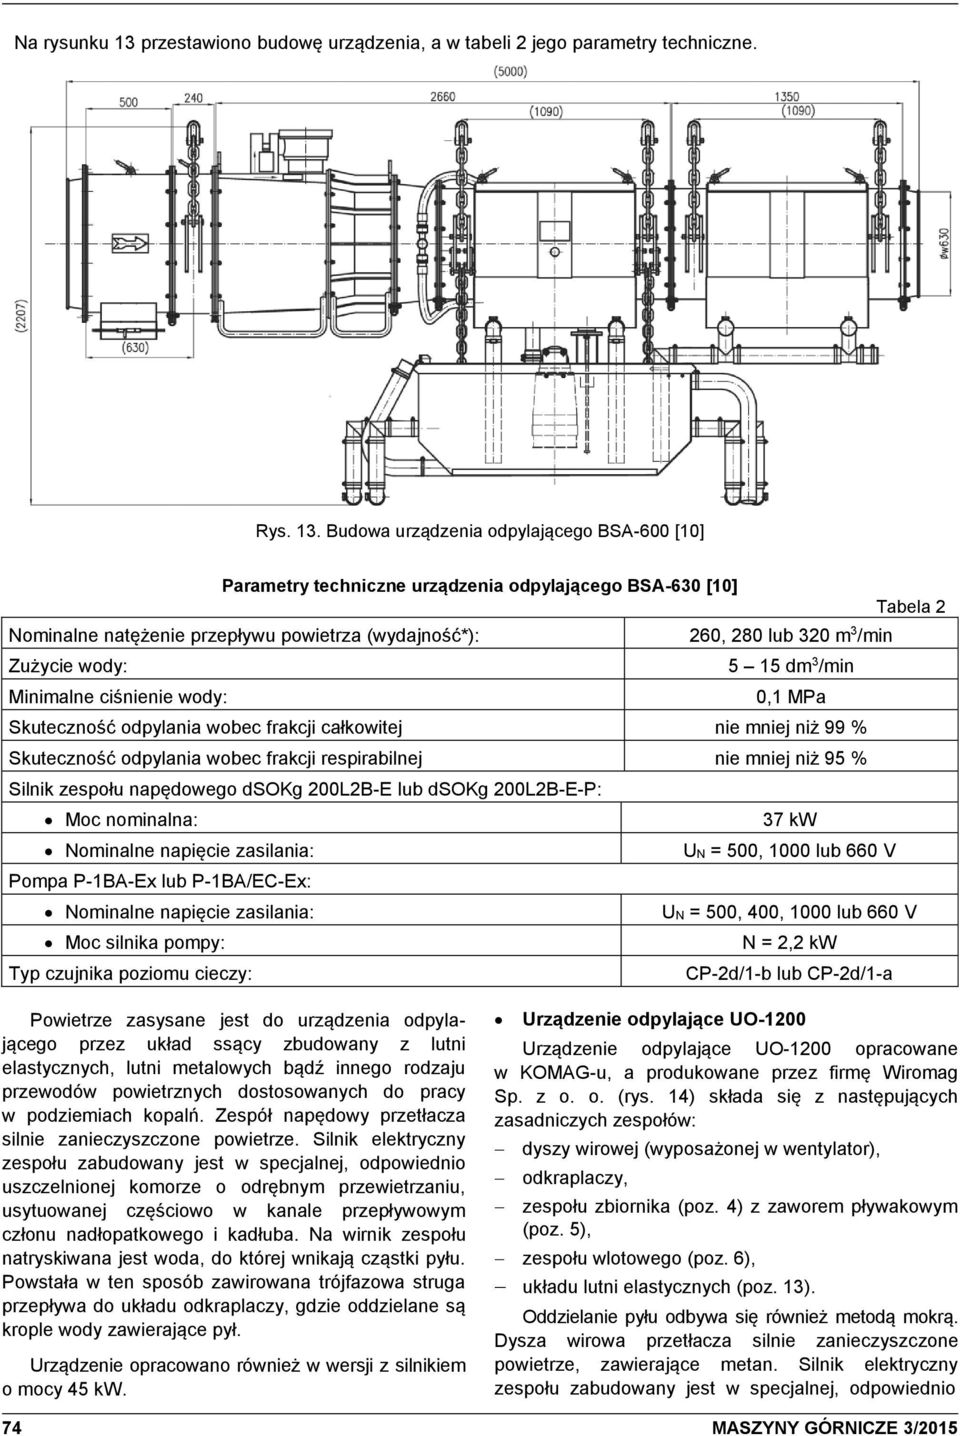 Budowa urządzenia odpylającego BSA-600 [10] Parametry techniczne urządzenia odpylającego BSA-630 [10] Tabela 2 Nominalne natężenie przepływu powietrza (wydajność*): 260, 280 lub 320 m 3 /min Zużycie